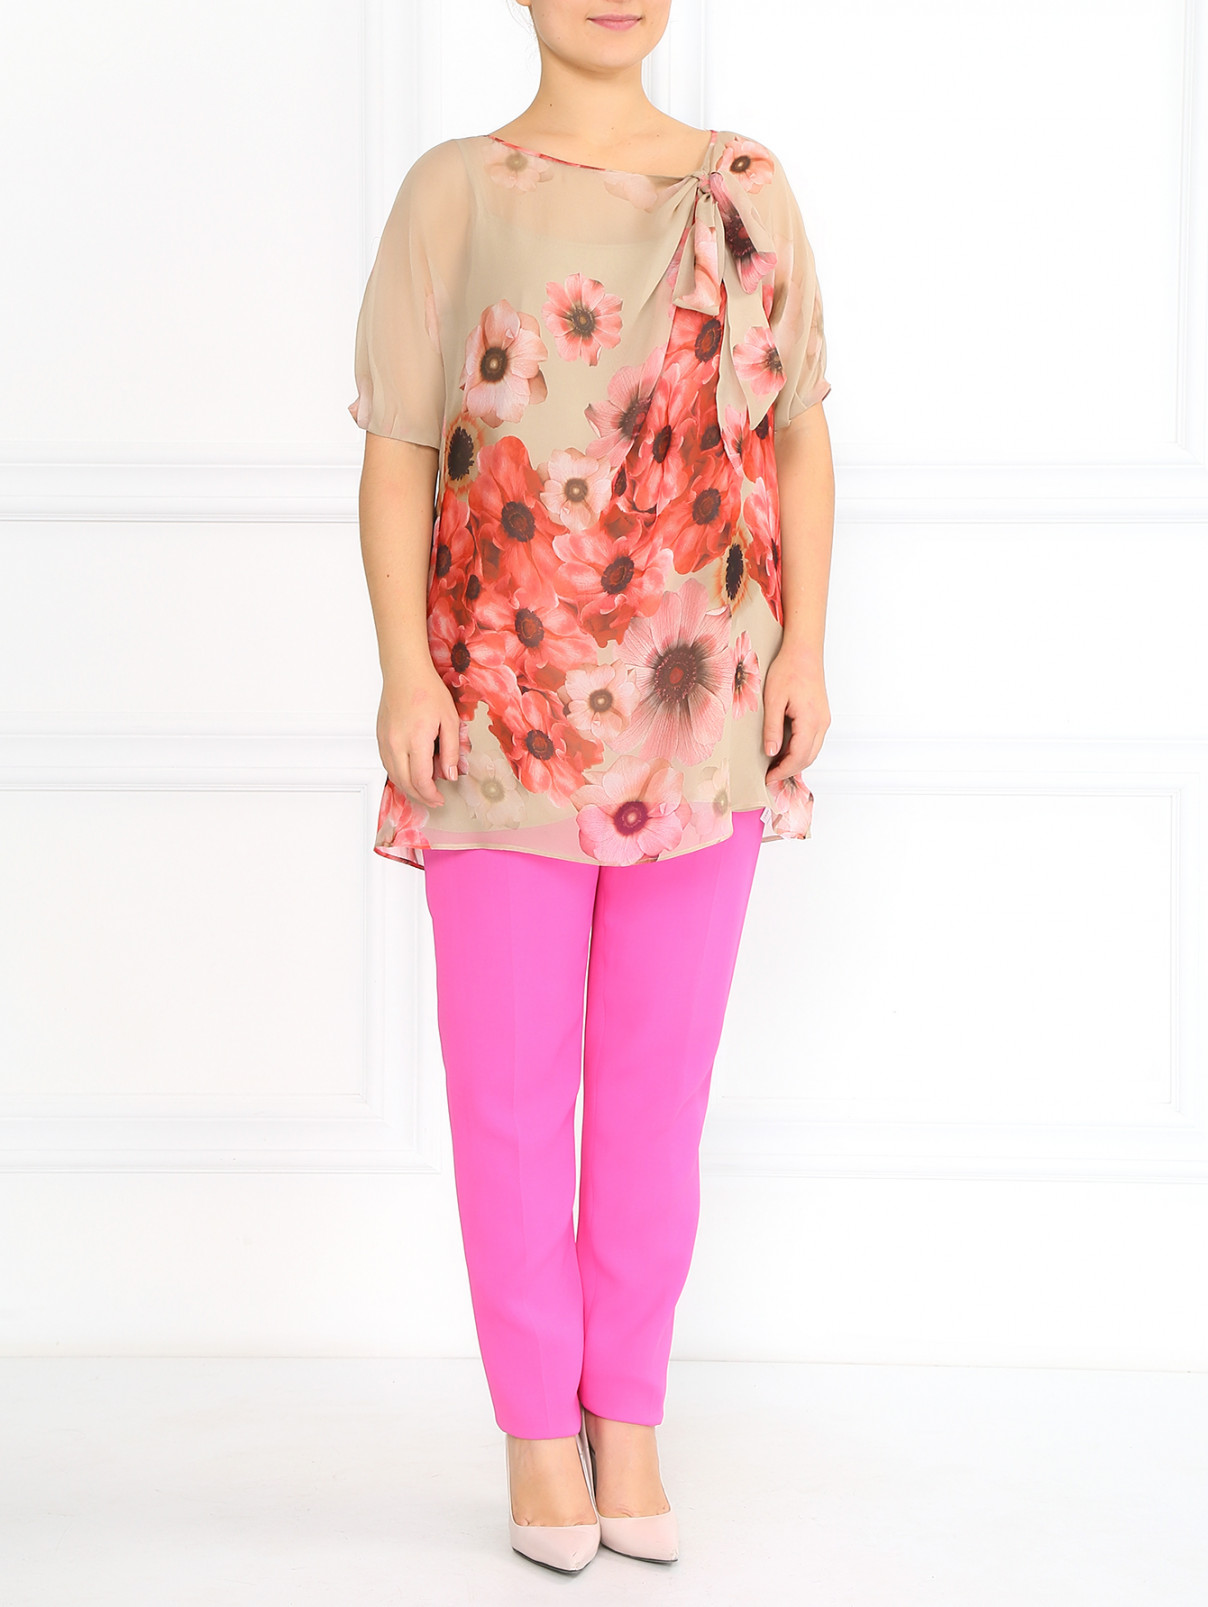 Зауженный брюки с боковой молнией Marina Rinaldi  –  Модель Общий вид  – Цвет:  Розовый